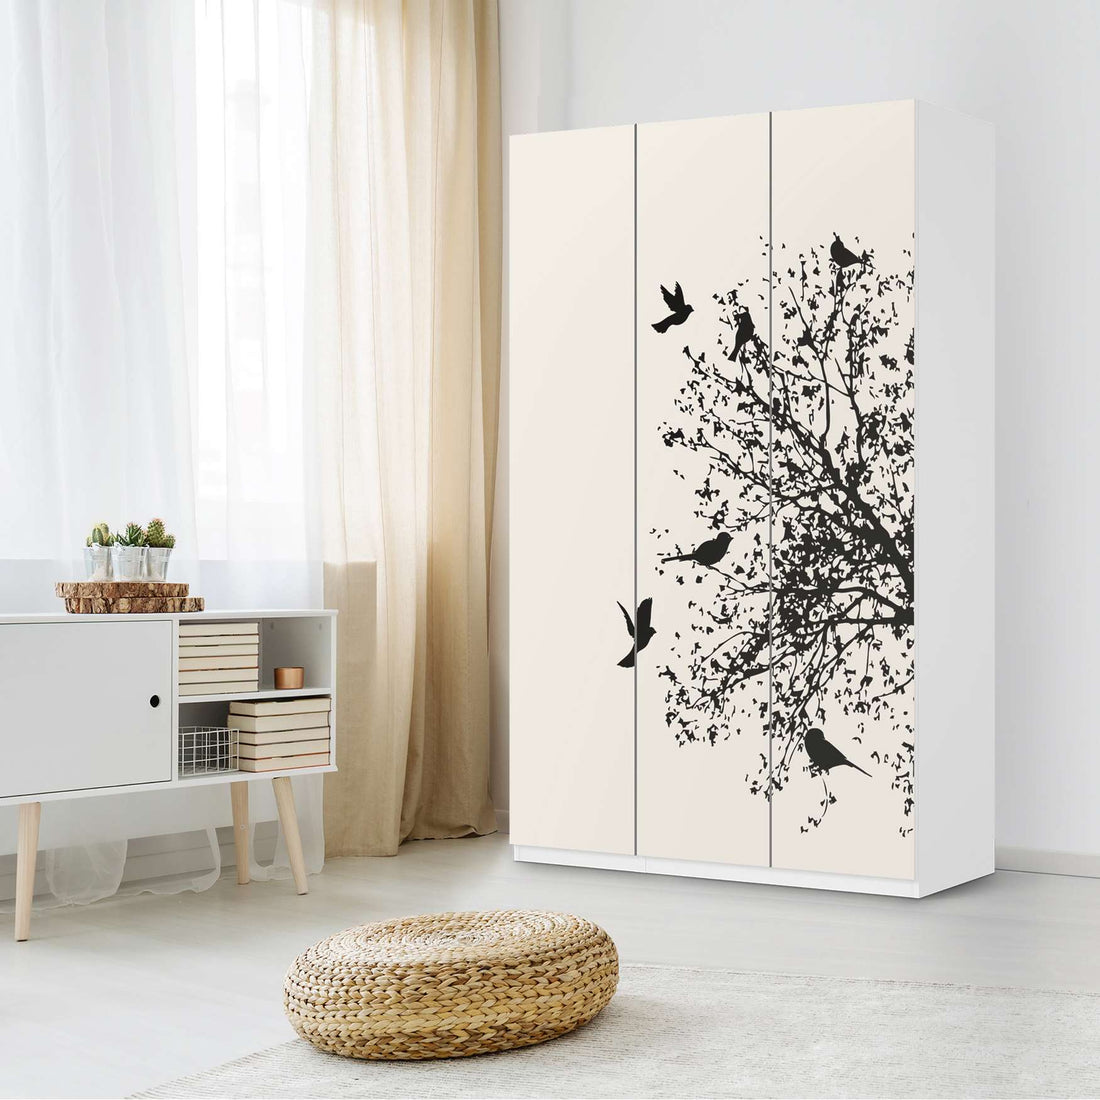 Selbstklebende Folie Tree and Birds 2 - IKEA Pax Schrank 236 cm Höhe - 3 Türen - Schlafzimmer